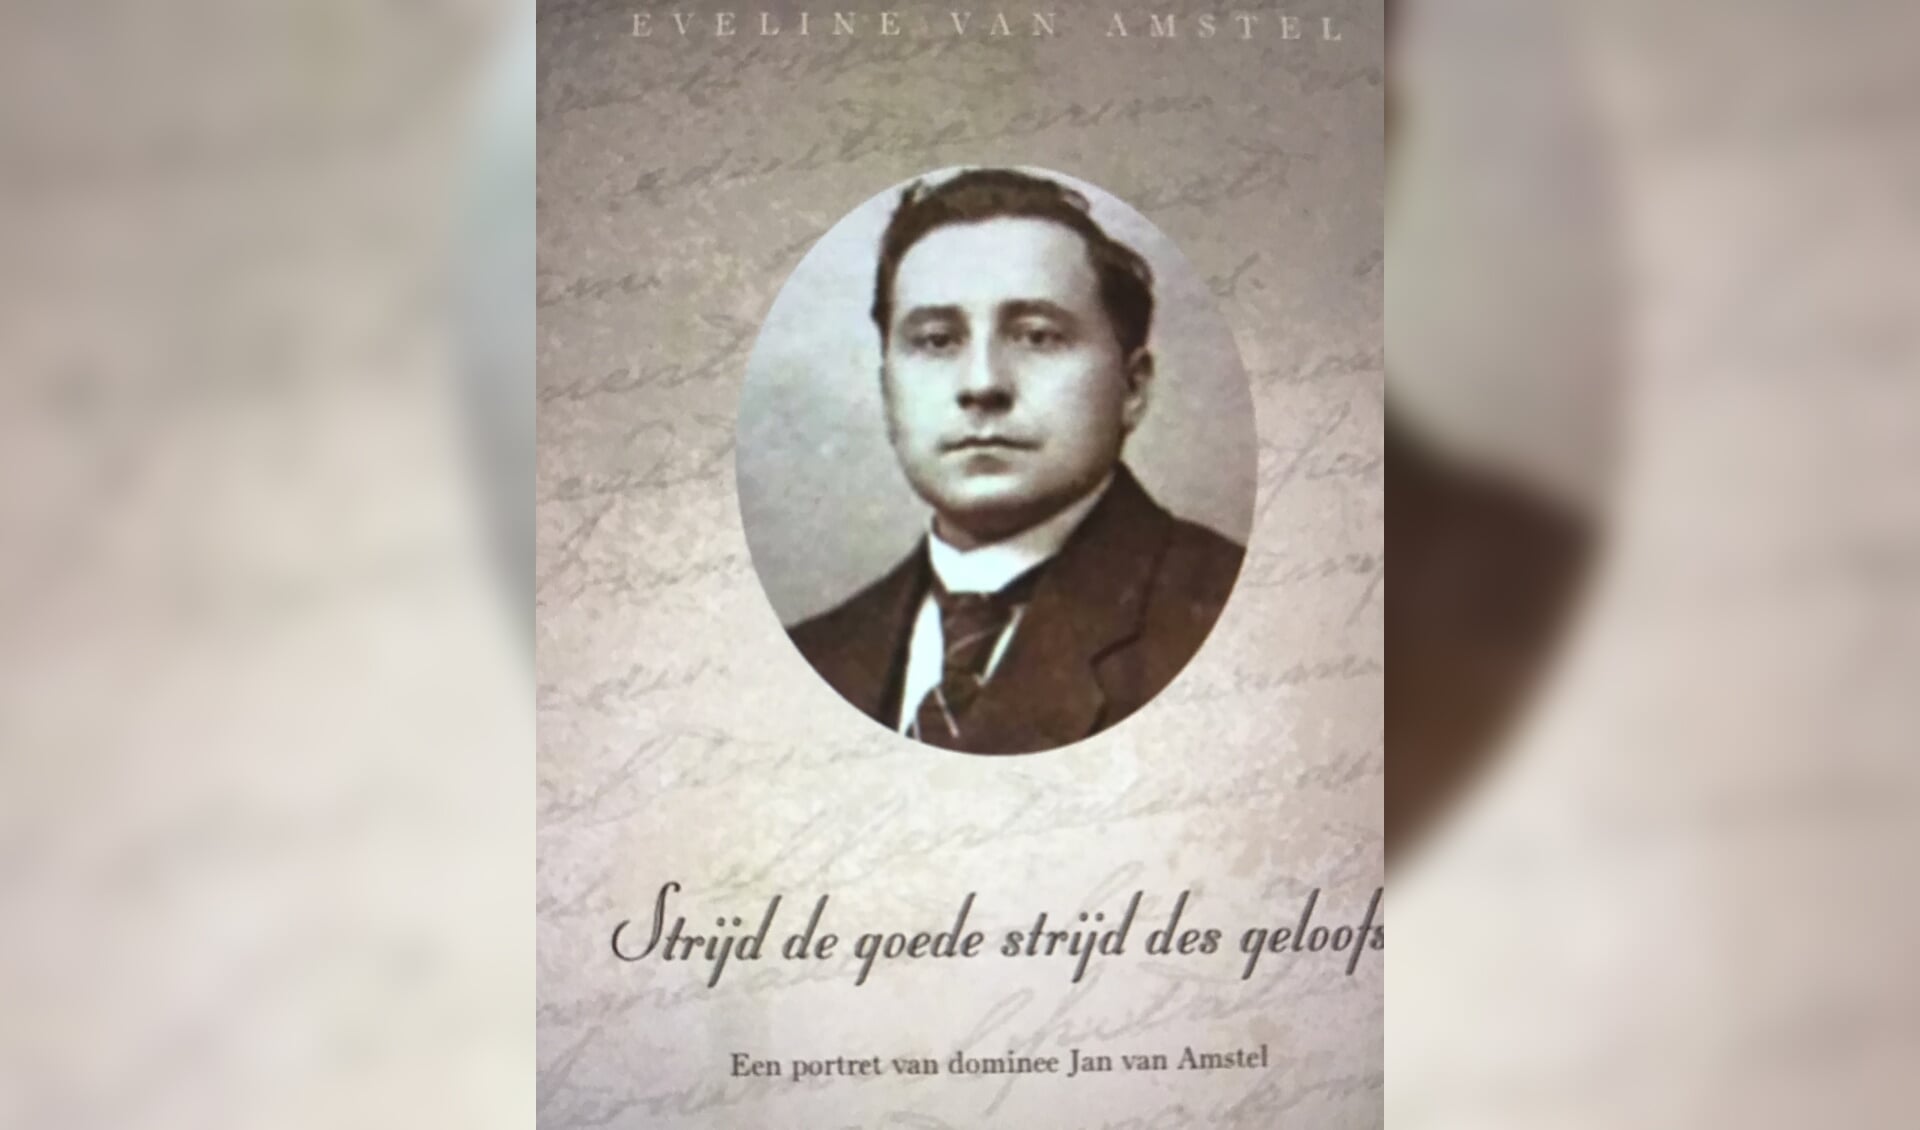 Het boek “Strijd de goede strijd des geloofs, een portret van dominee Jan van Amstel”